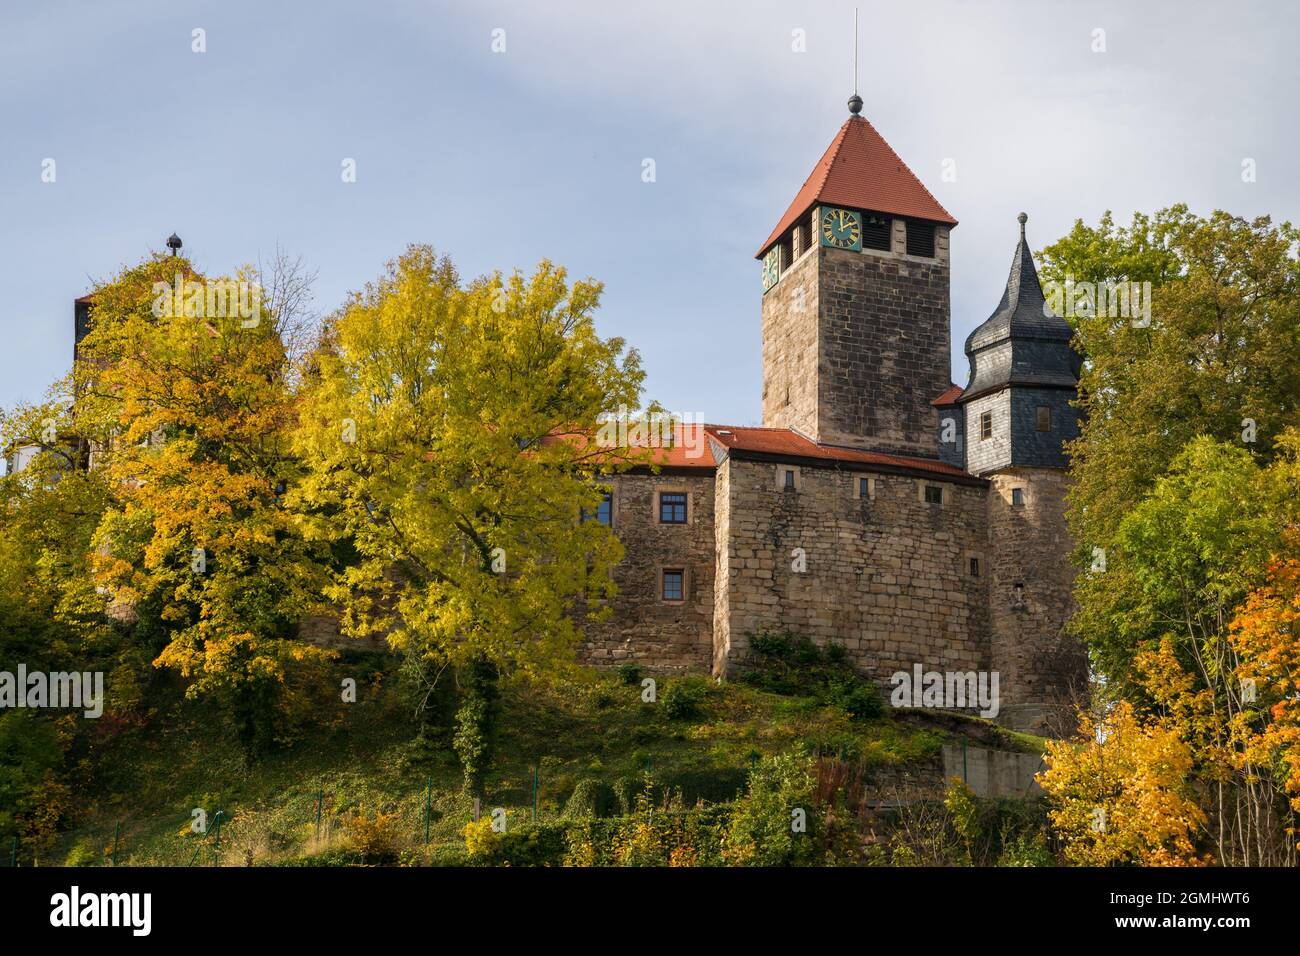 Das gut erhaltene Schloss Elgersburg bei Ilmenau im Herzen Thüringens stammt aus dem Jahr 1088. Foto aufgenommen an einem sonnigen Herbstnachmittag Stockfoto